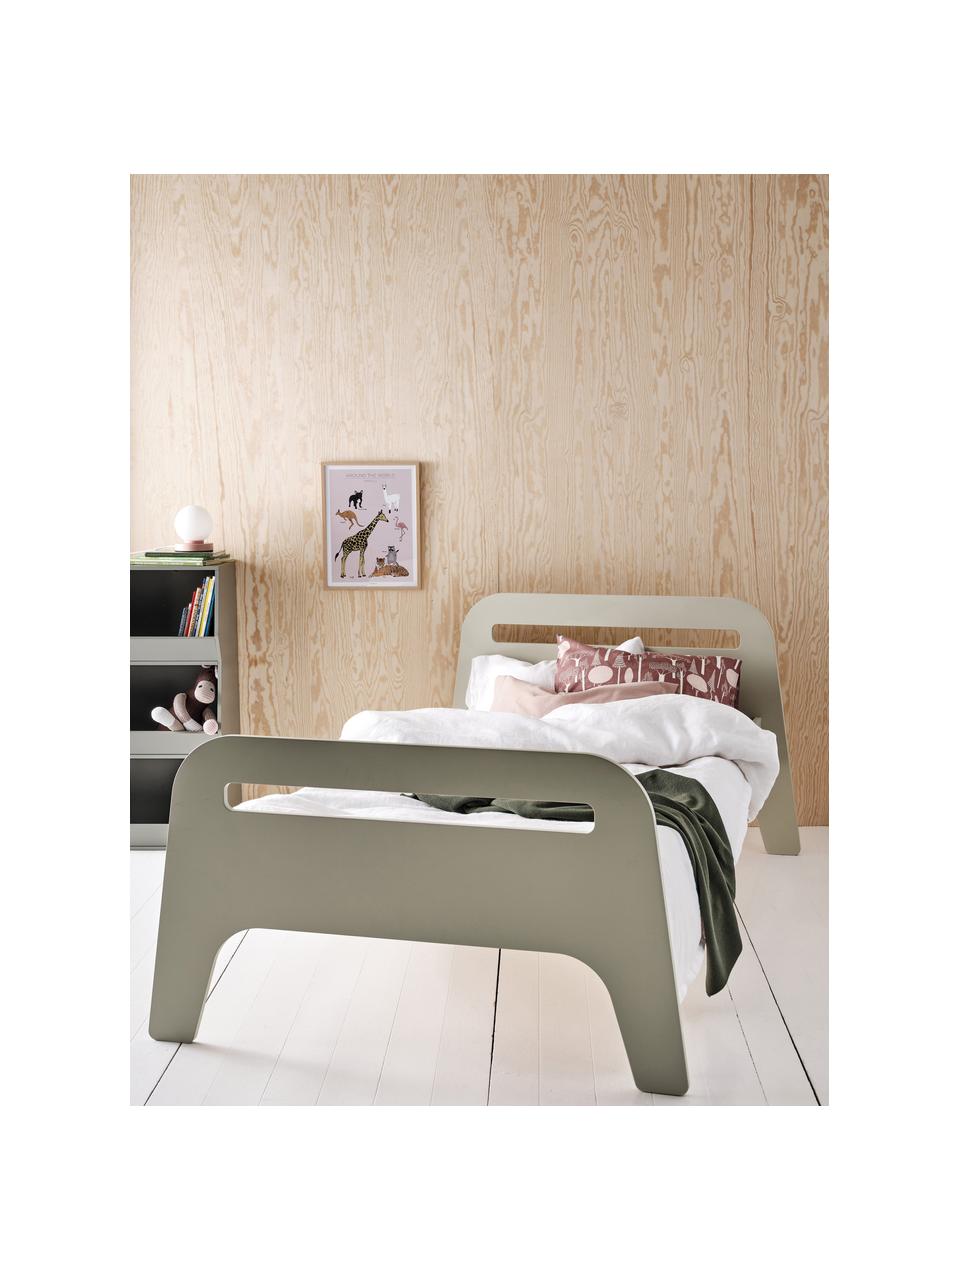 Dřevěná dětská postel Jibbo, 90 x 200 cm, MDF deska (dřevovláknitá deska střední hustoty), překližka, Šedozelená, Š 90 cm, D 200 cm